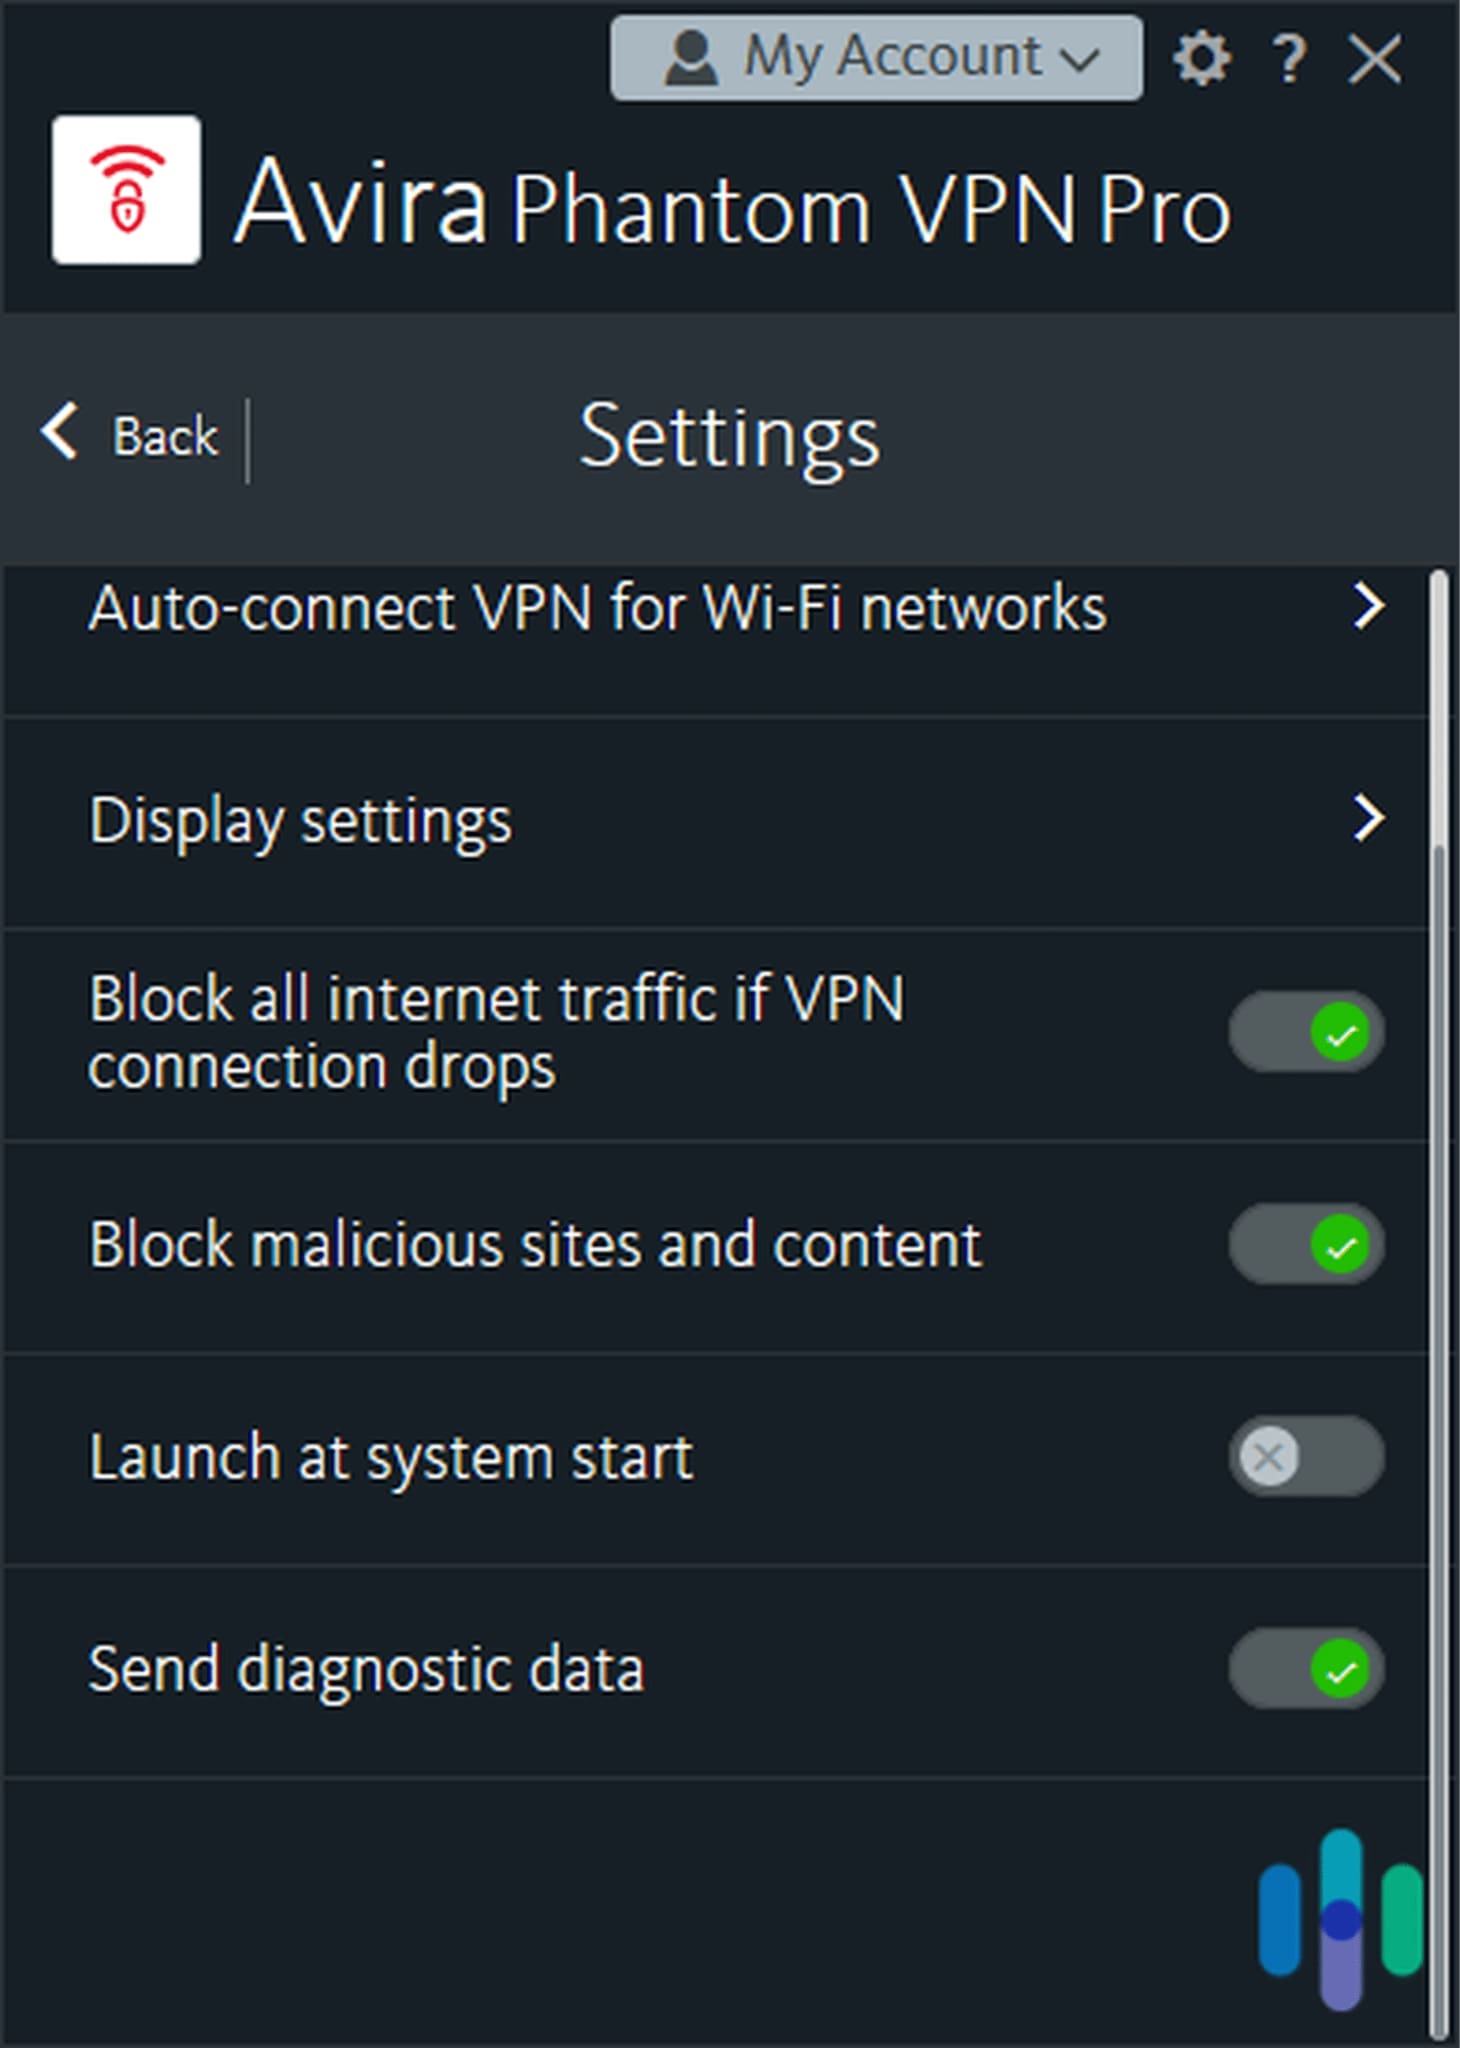 Avira Phantom VPN settings